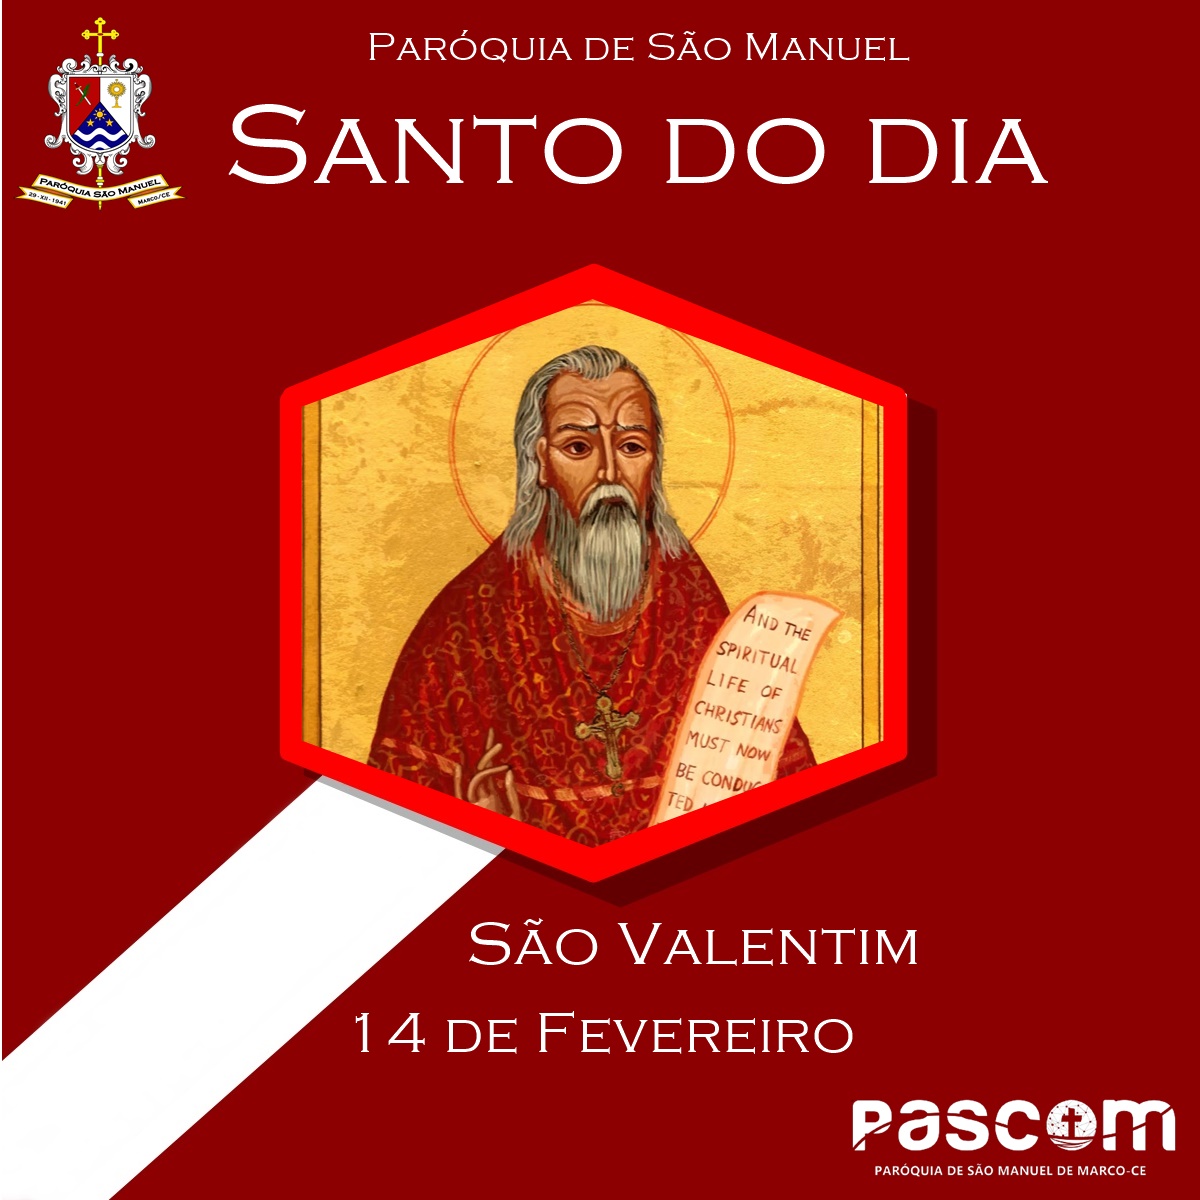 Hoje é celebrada a festa de São Valentim, grande conselheiro e